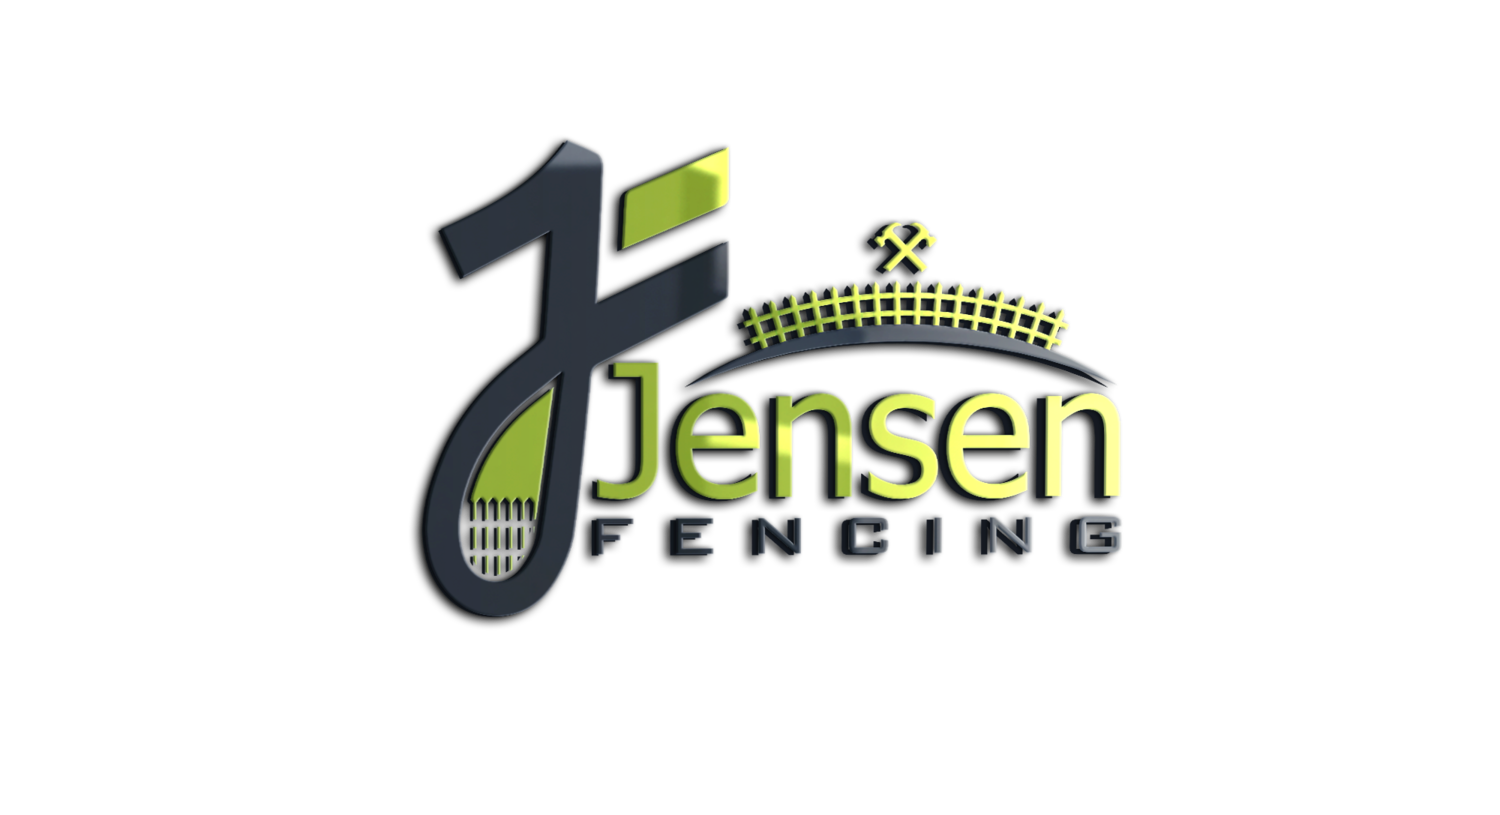 Jensen Fencing